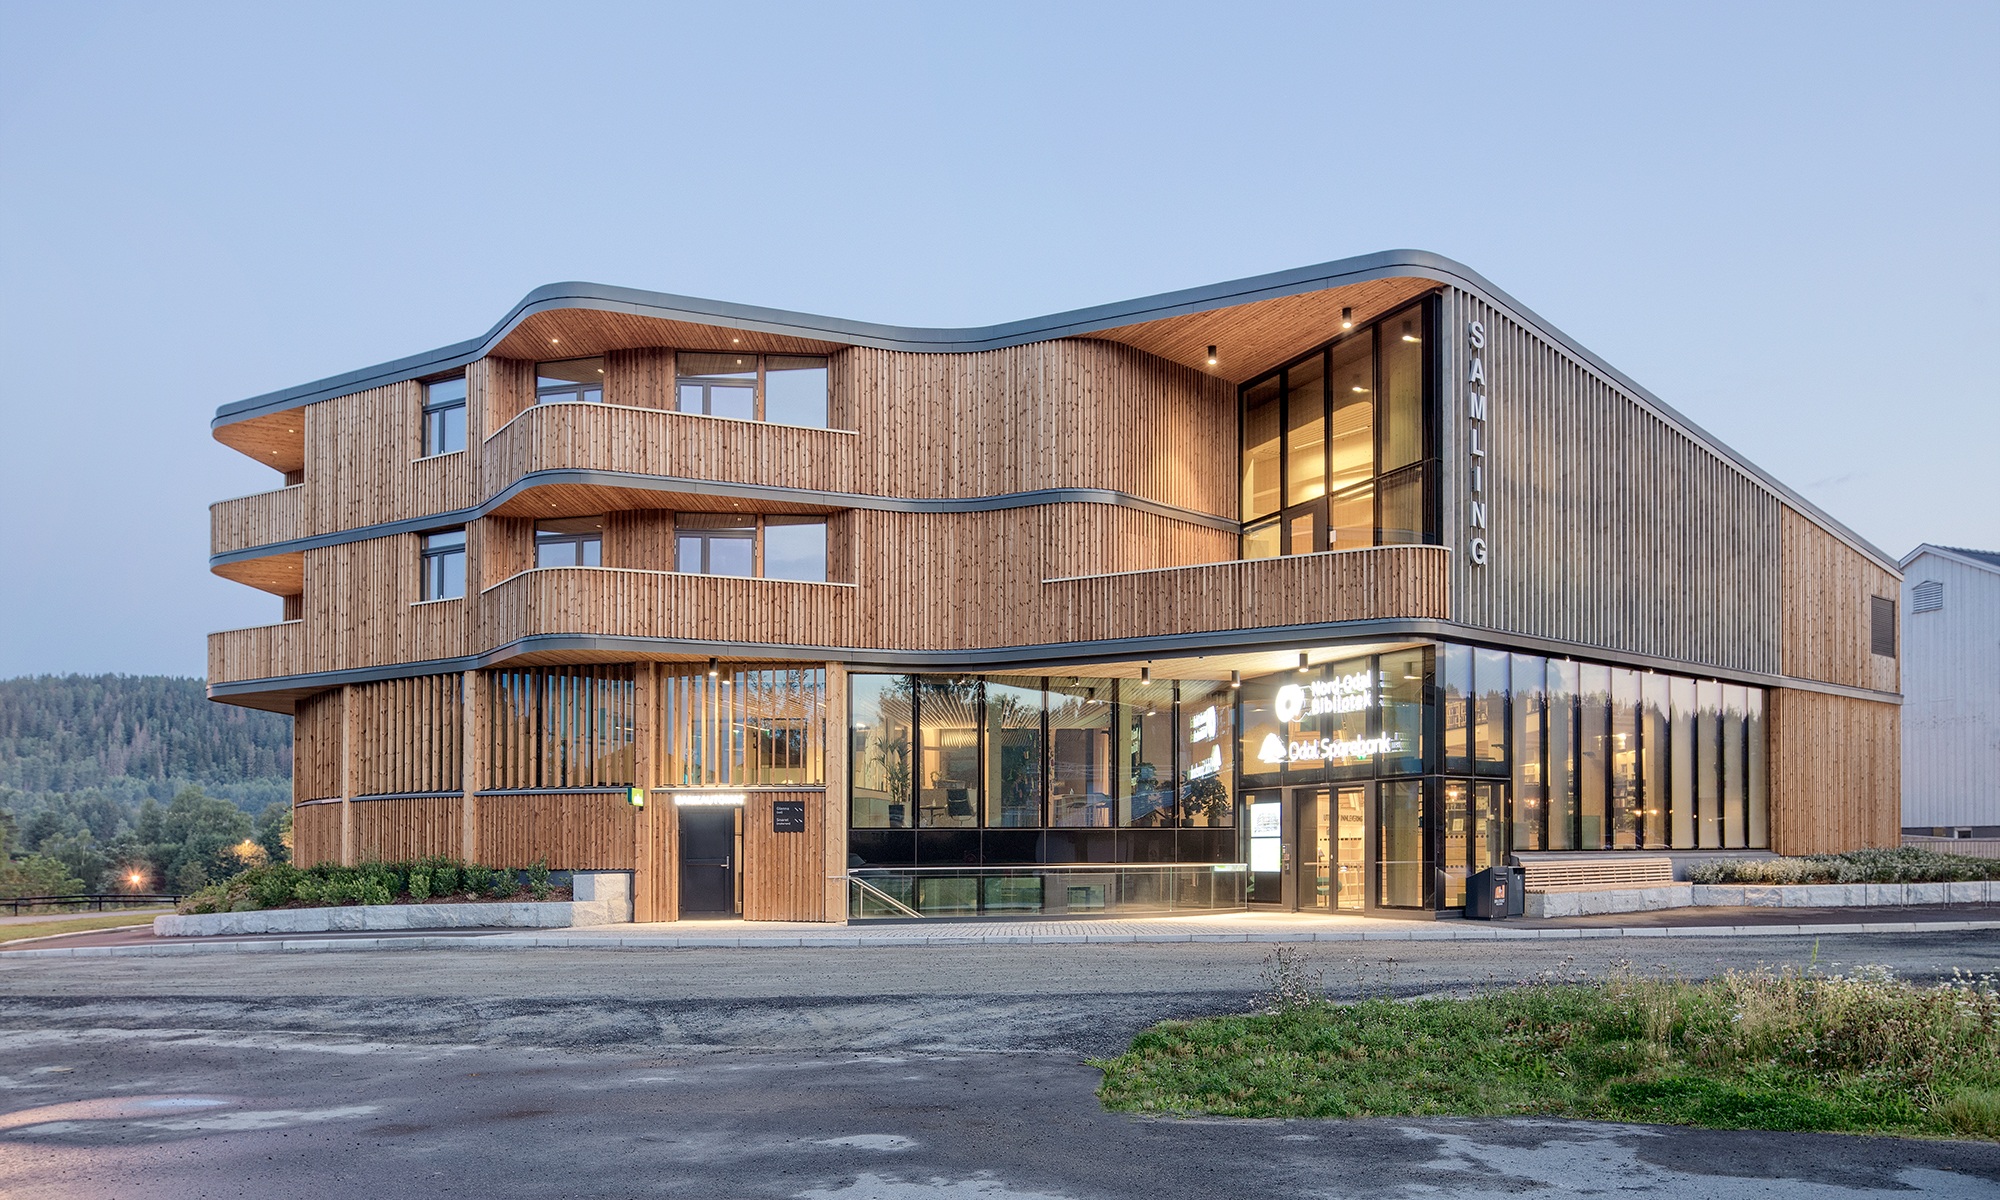 Dreistöckiges Bibliotheksgebäude Samling mit geschwungener Form in Holzbauweise bei Abendstimmung